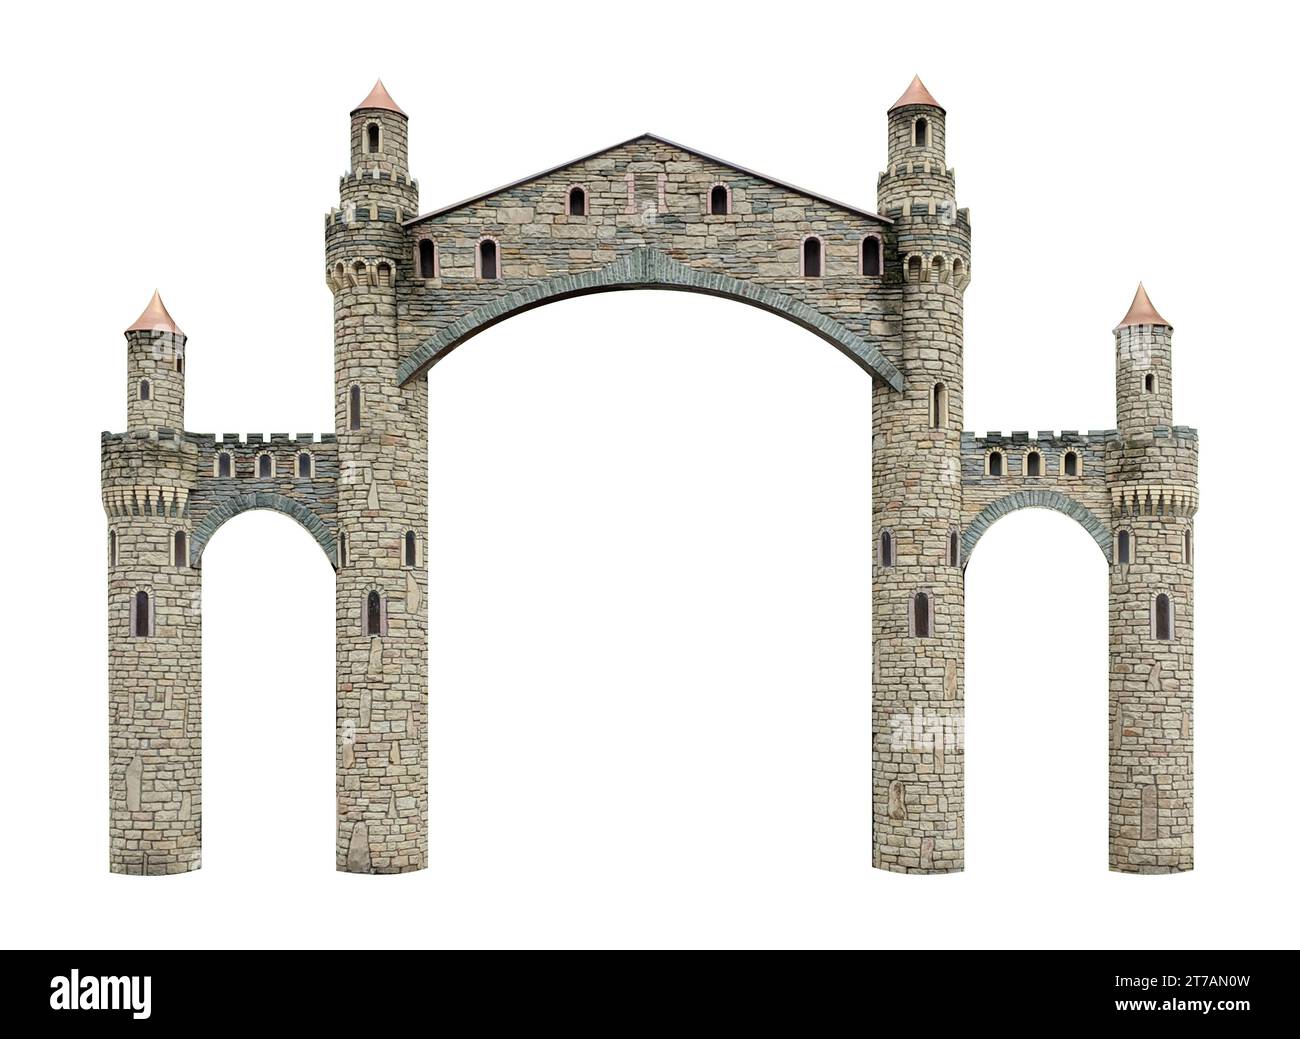 Mittelalterliche gotische Festung oder Burg mit Turm, Stockfoto